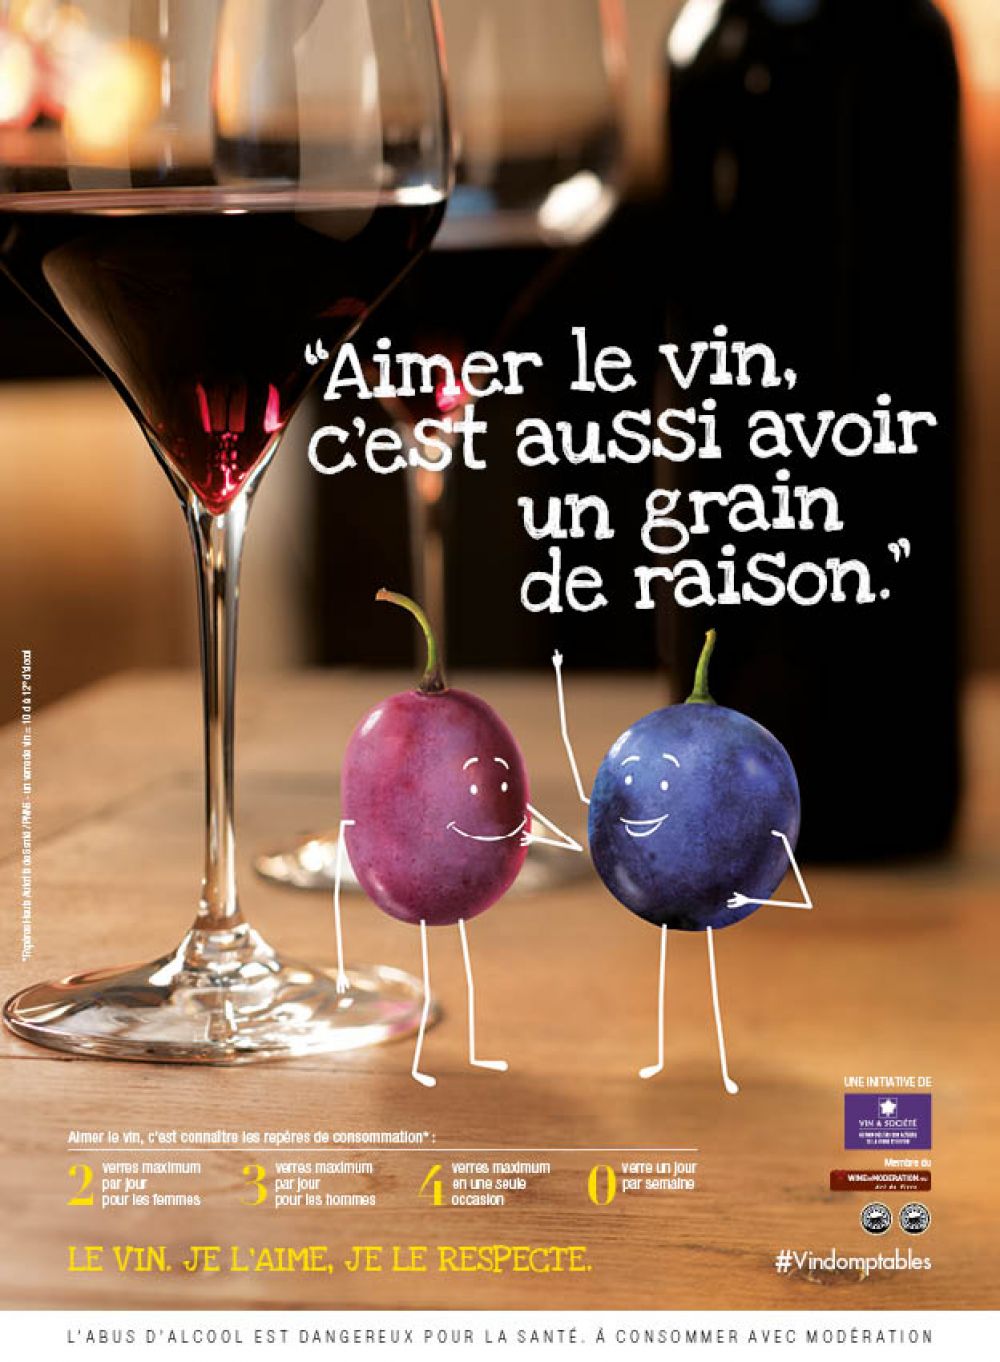 Vin et Société launches multichannel national campaign on drinking guidelines